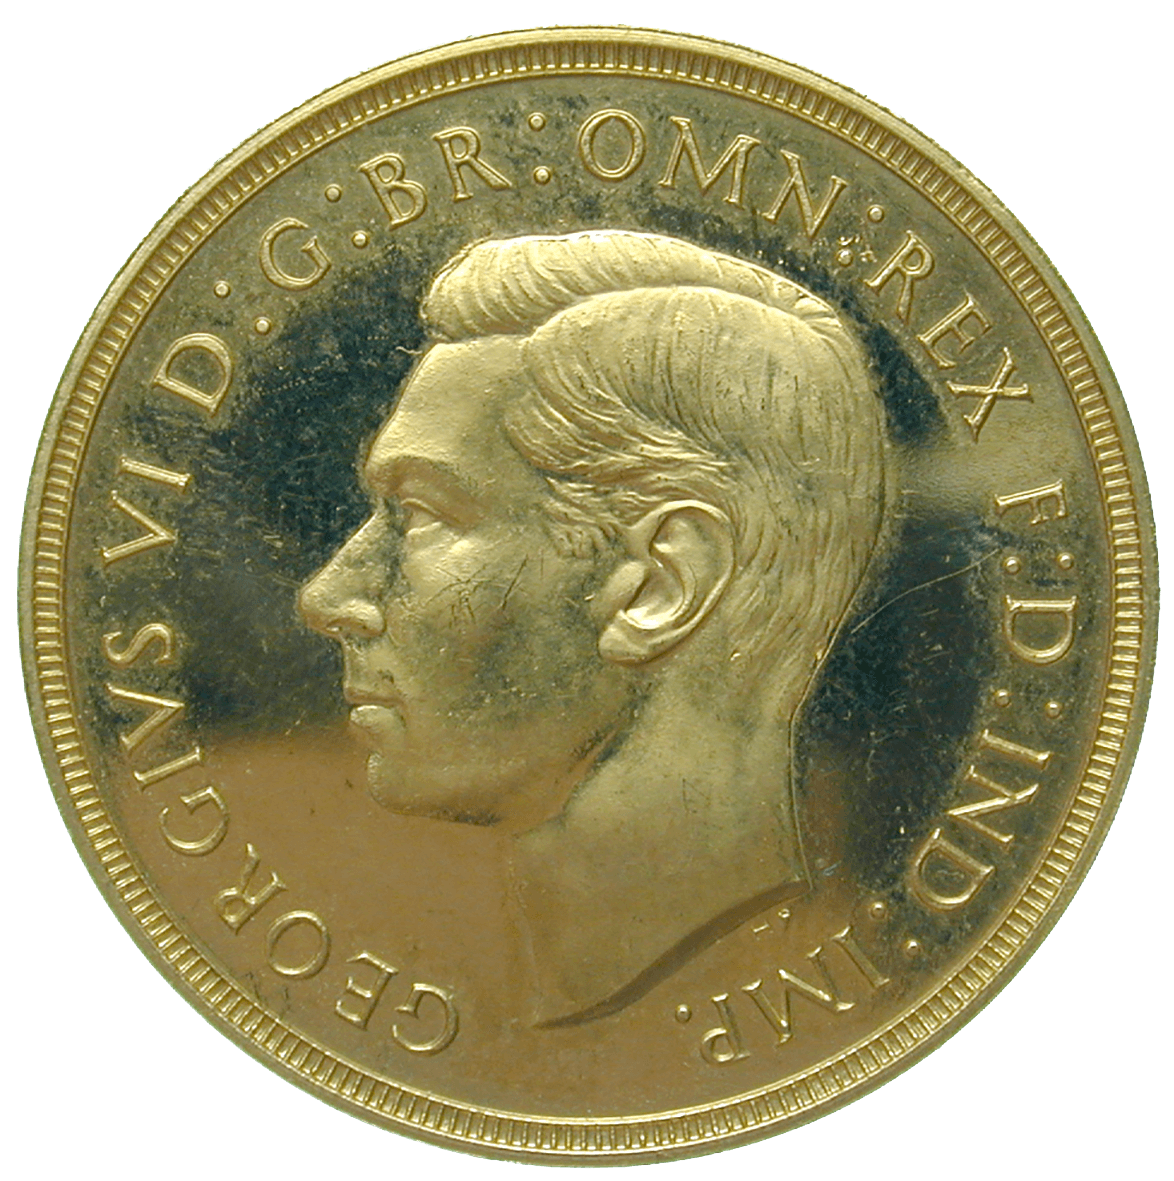 Vereinigtes Königreich Grossbritannien, Georg VI., 2 Pfund 1937 (obverse)